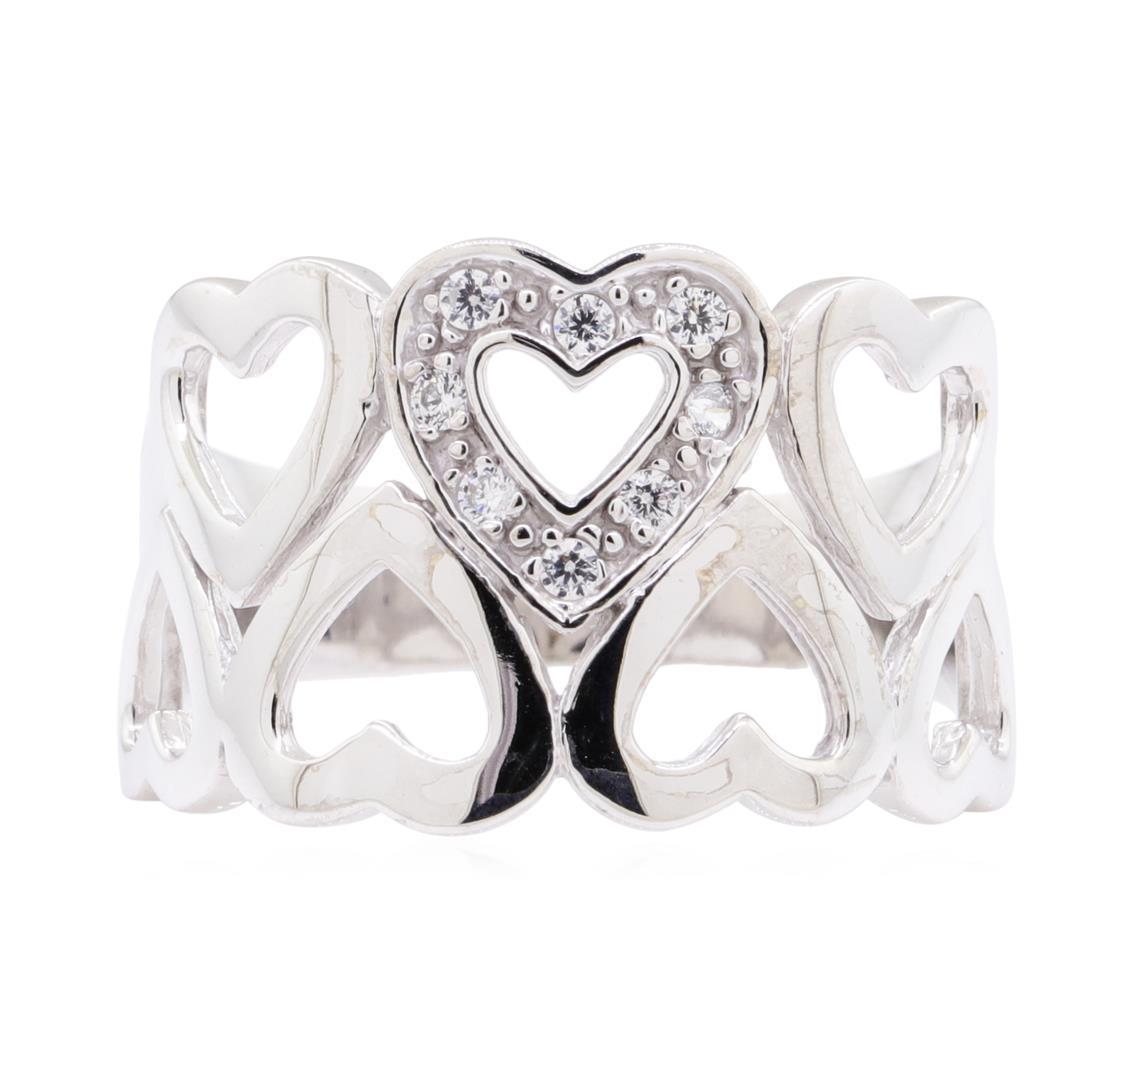 0.12 ctw Diamond Heart Motif Ring - 10KT White Gold